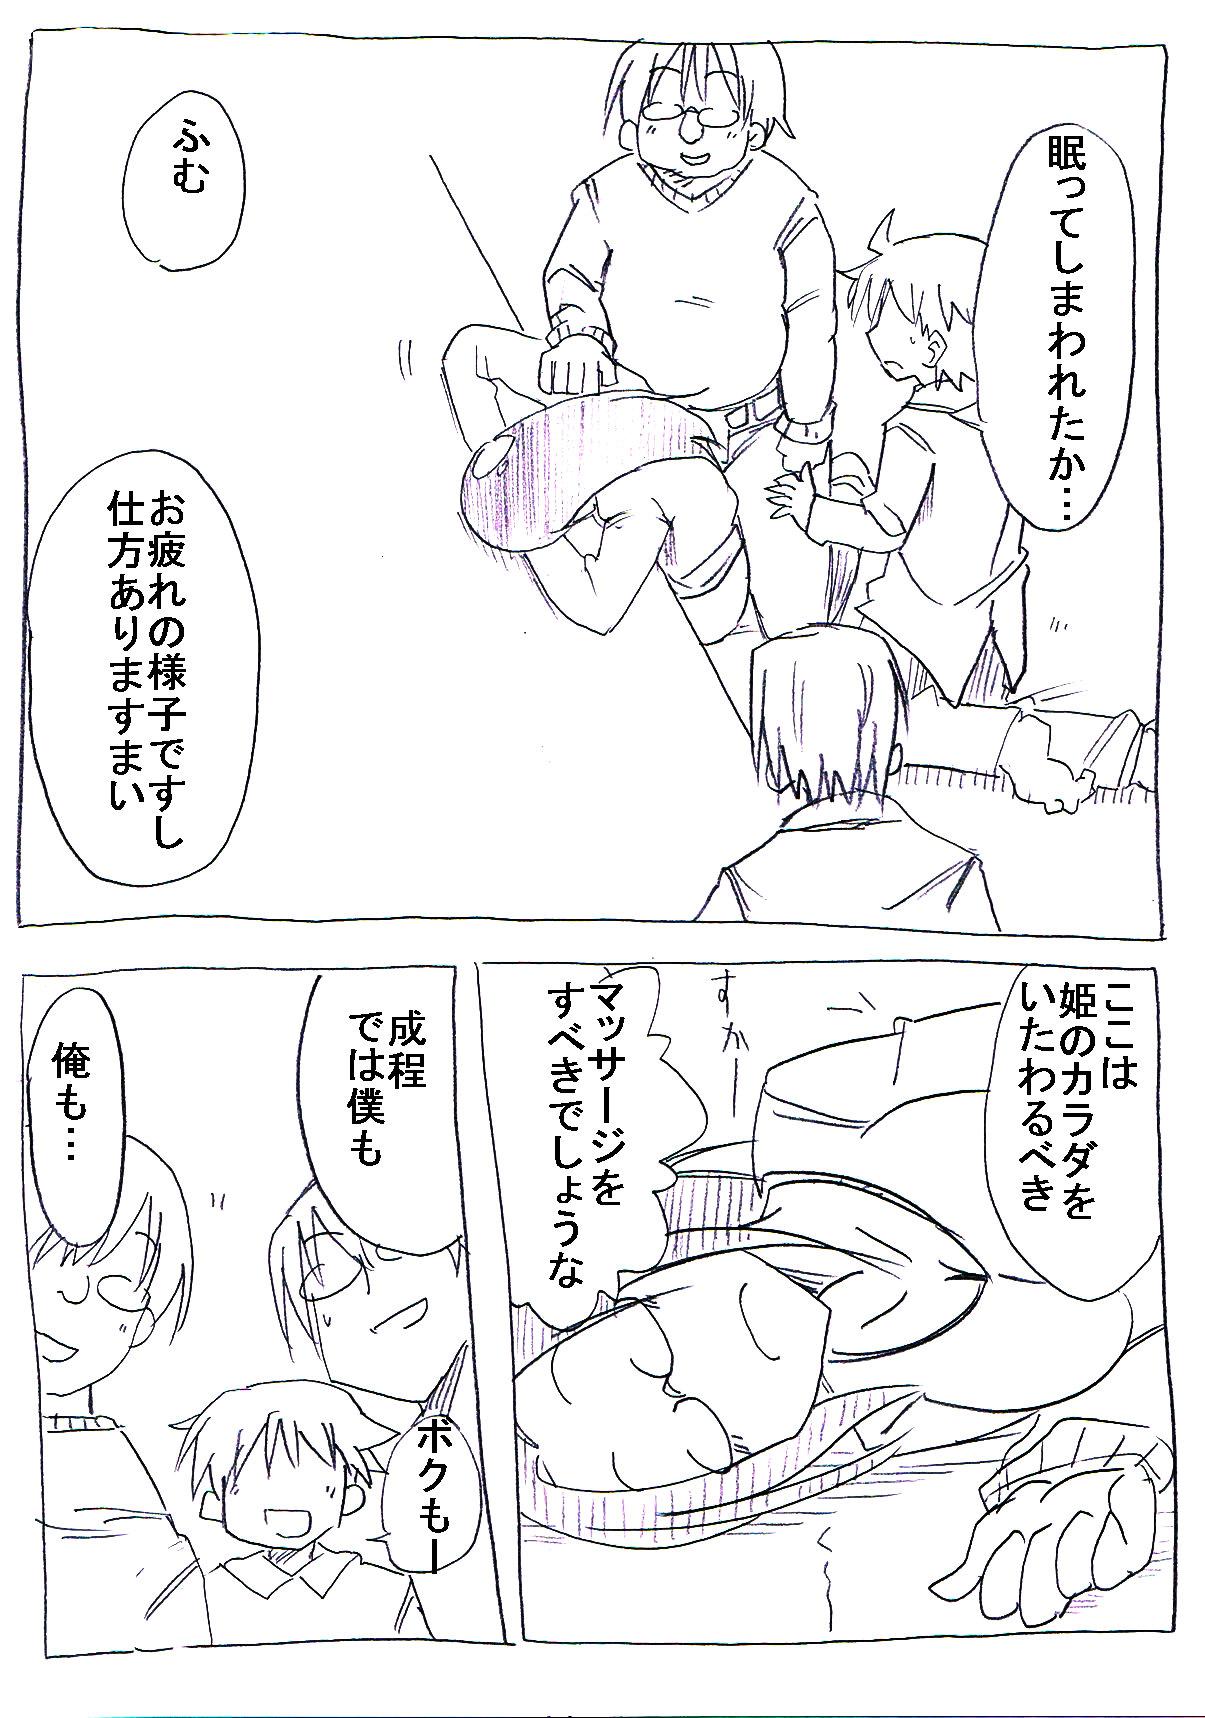 Gag OtaCir no Hime ga Neteiru Aida ni Torimaki ni Okasareru Jocks - Page 10